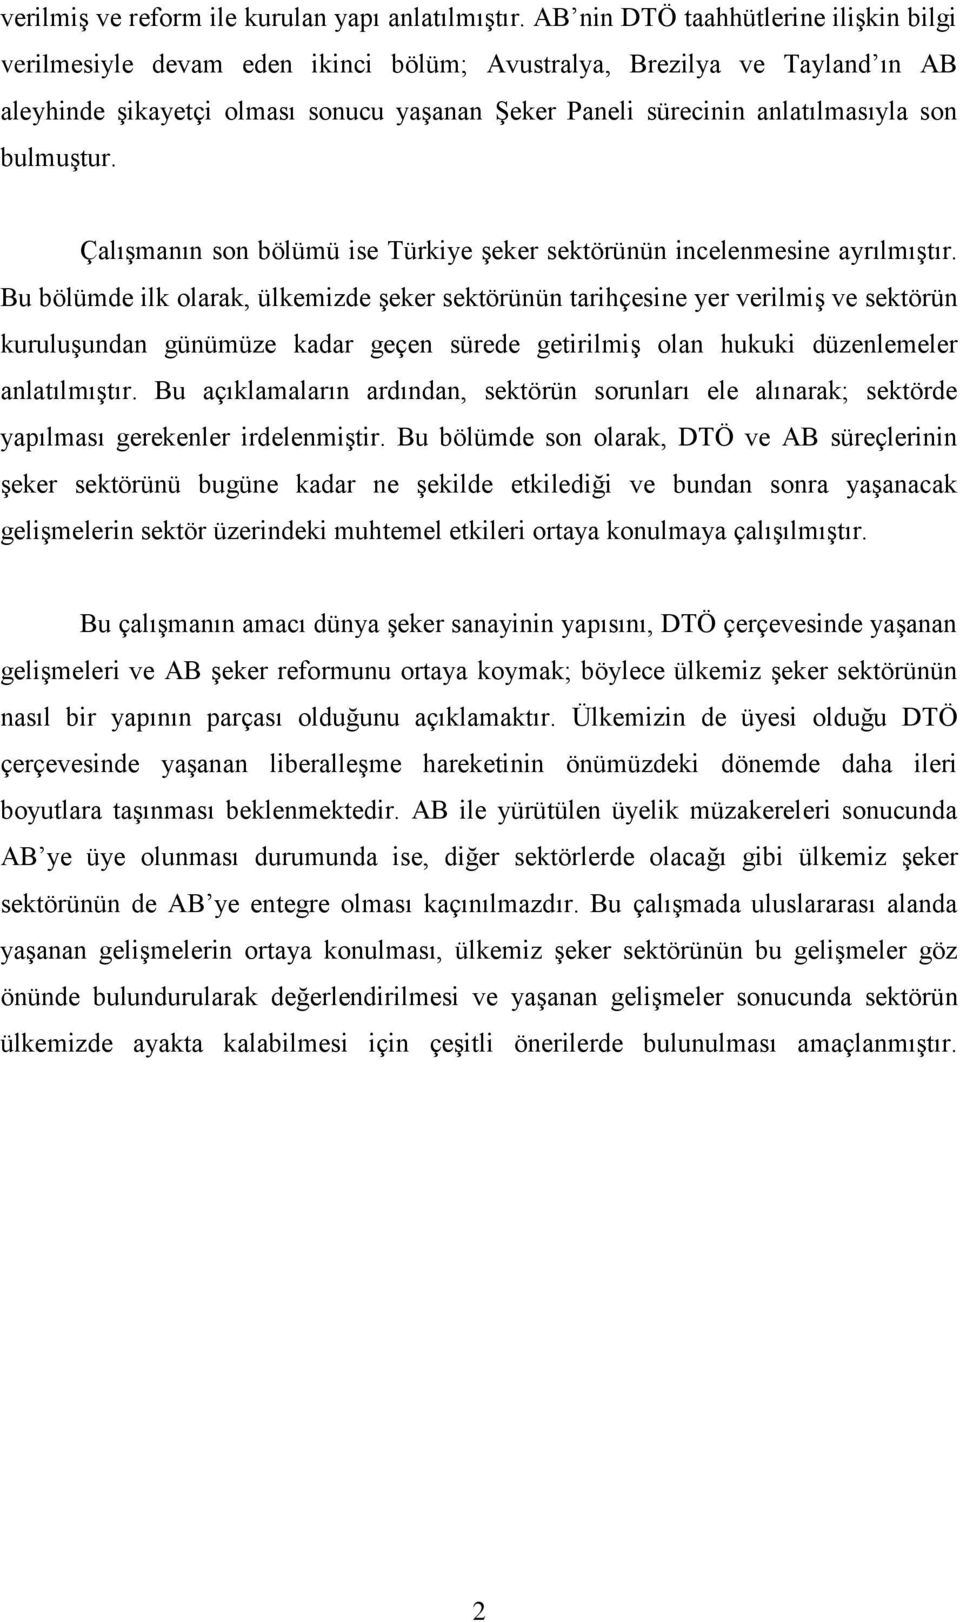 bulmuģtur. ÇalıĢmanın son bölümü ise Türkiye Ģeker sektörünün incelenmesine ayrılmıģtır.